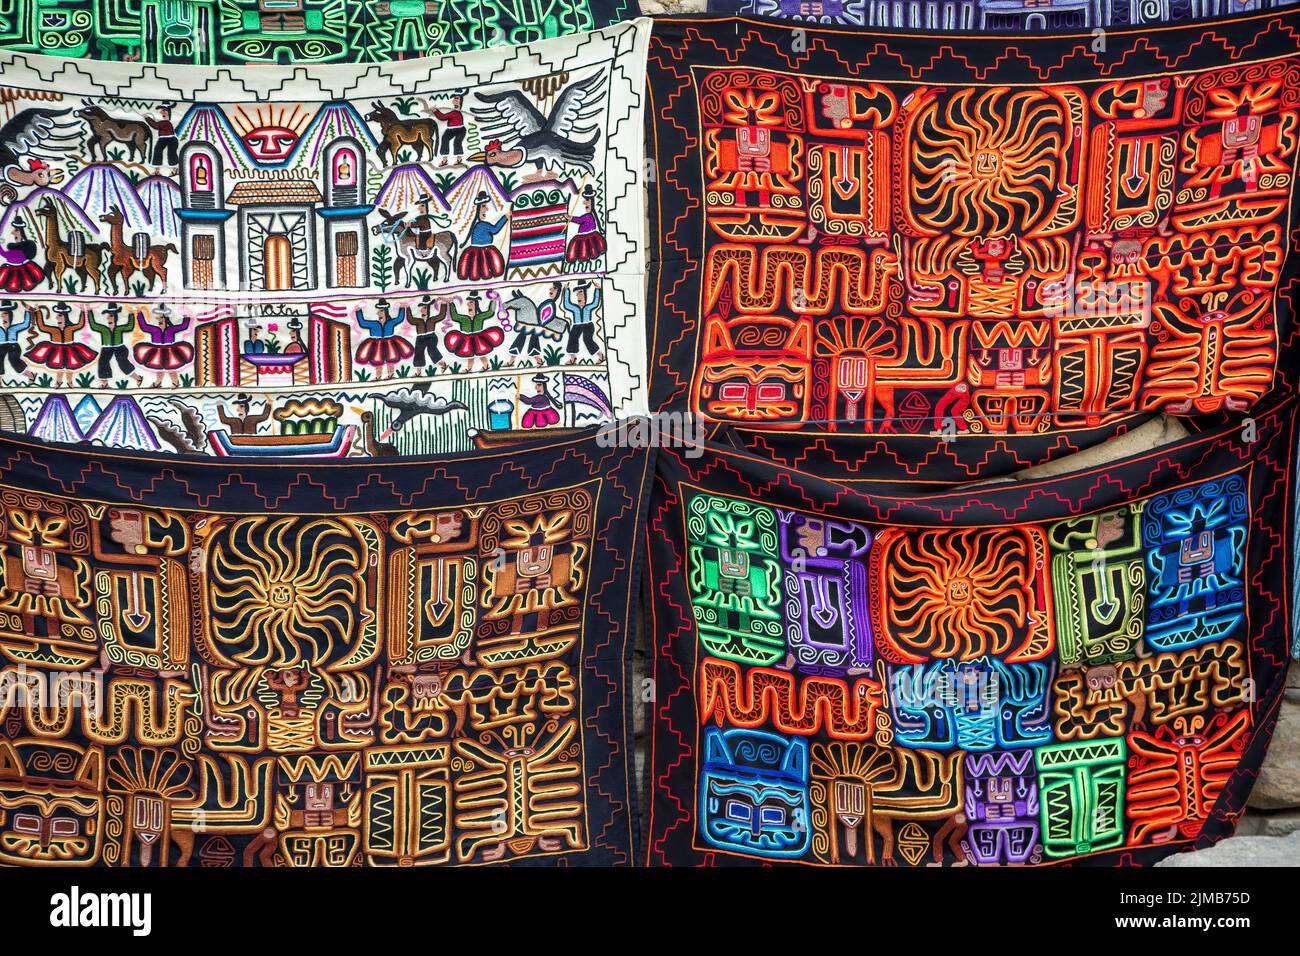 Coloristas mantas, mercado de artesanos, Ollantaytambo, Urubamba, Cusco, Perú Foto de stock